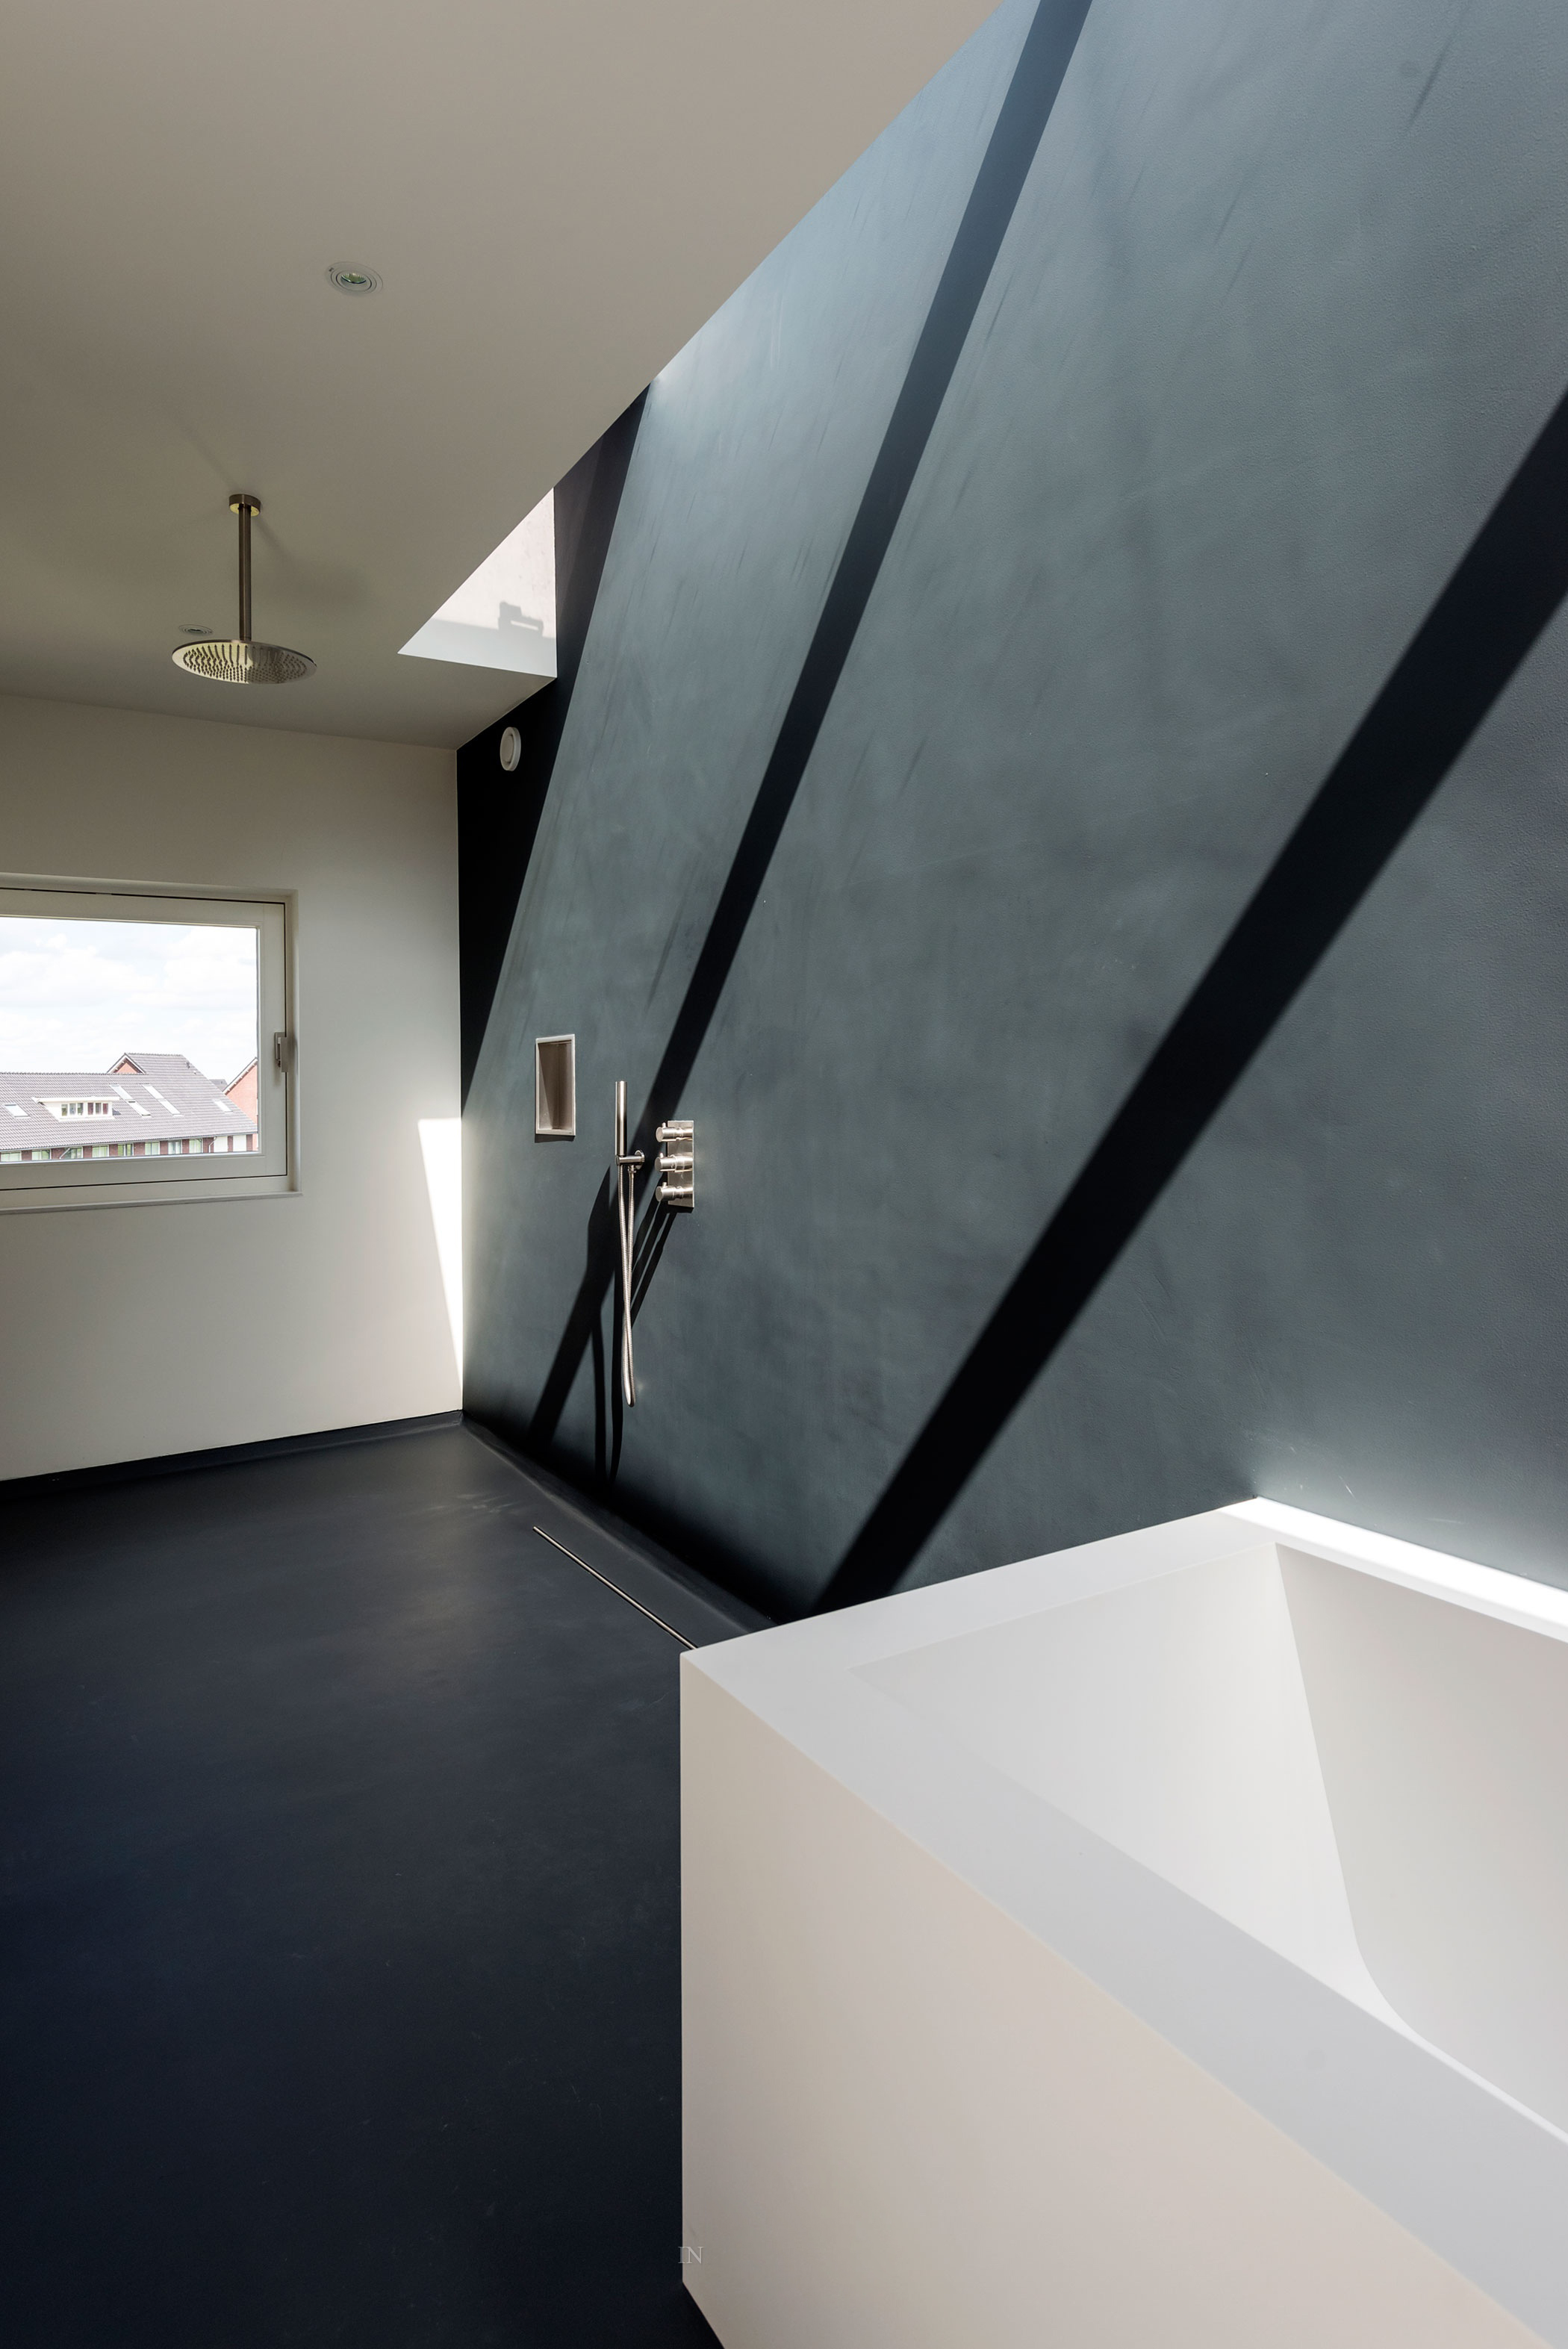 简约 混搭 别墅 欧式 卫生间图片来自百合居装饰工程有限公司在简约清爽的分享